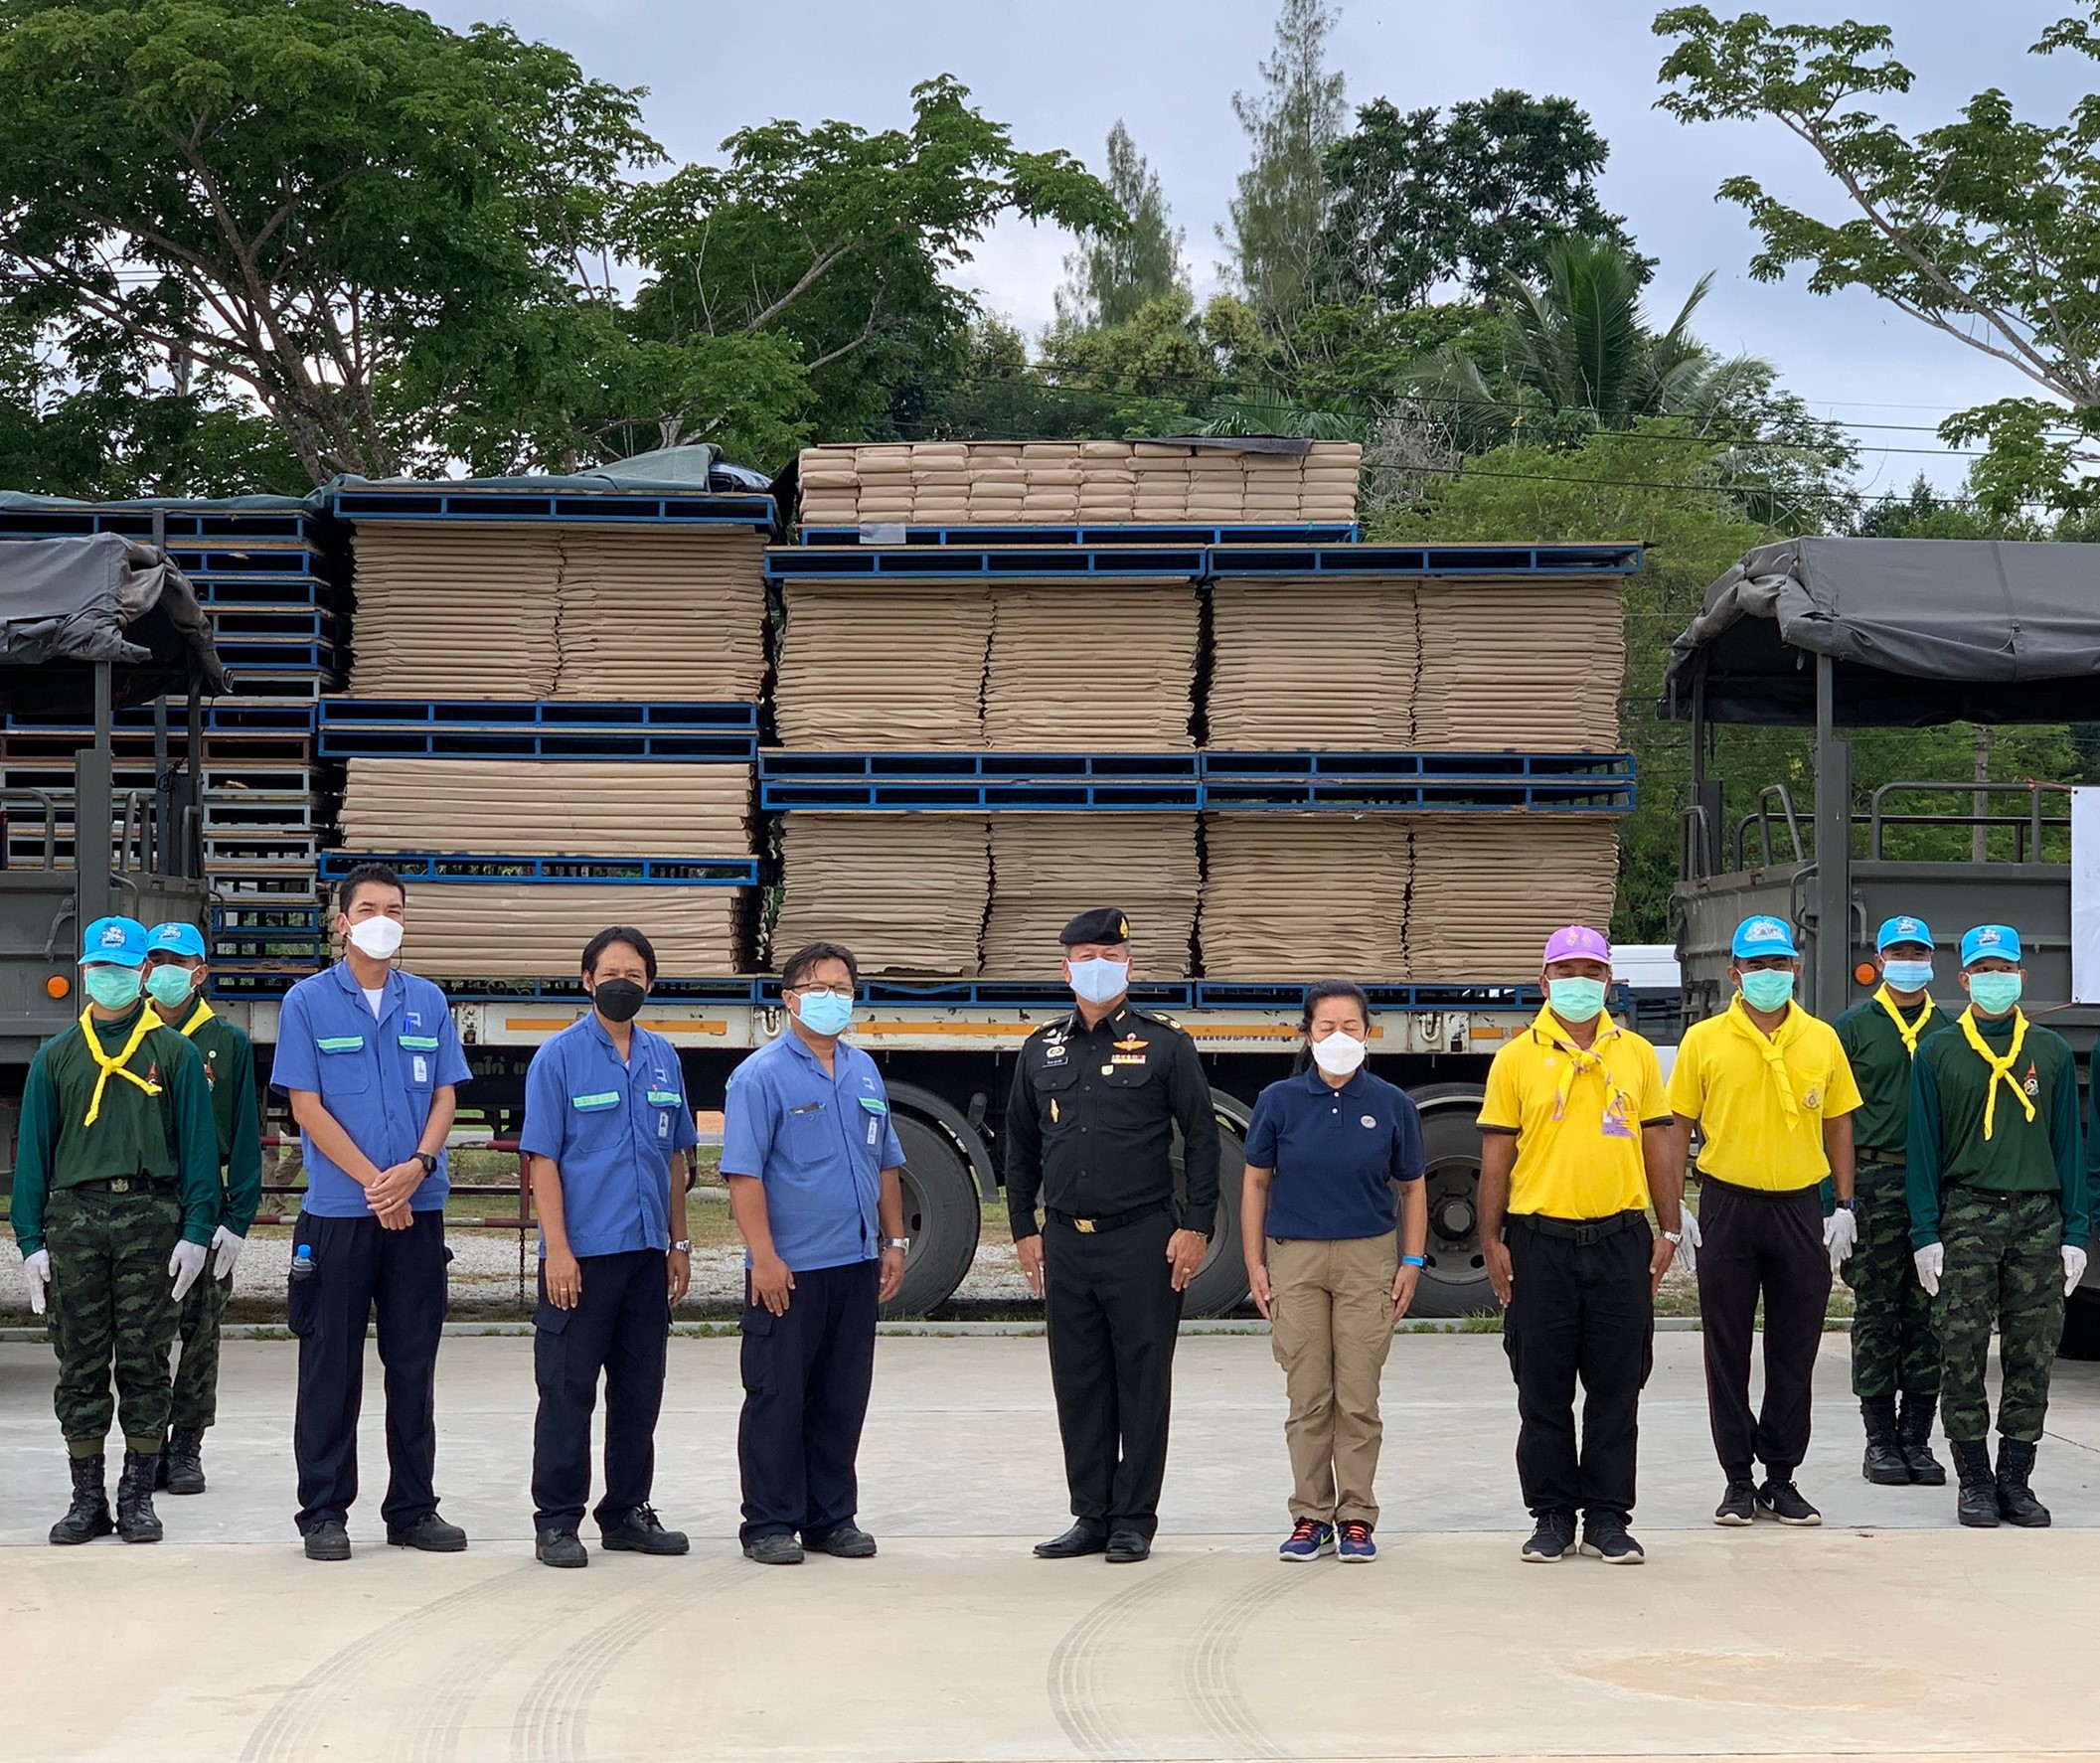 บริษัท พาเนล พลัส จำกัด และกองทุนมิตรผล-บ้านปู รวมใจช่วยไทยสู้ภัย COVID-19 ส่งมอบอุปกรณ์ เตียงสนามไม้ ให้กับโรงพยาบาลสนาม และหน่วยงานในจังหวัดสงขลา เพื่อรองรับผู้ป่วย COVID-19